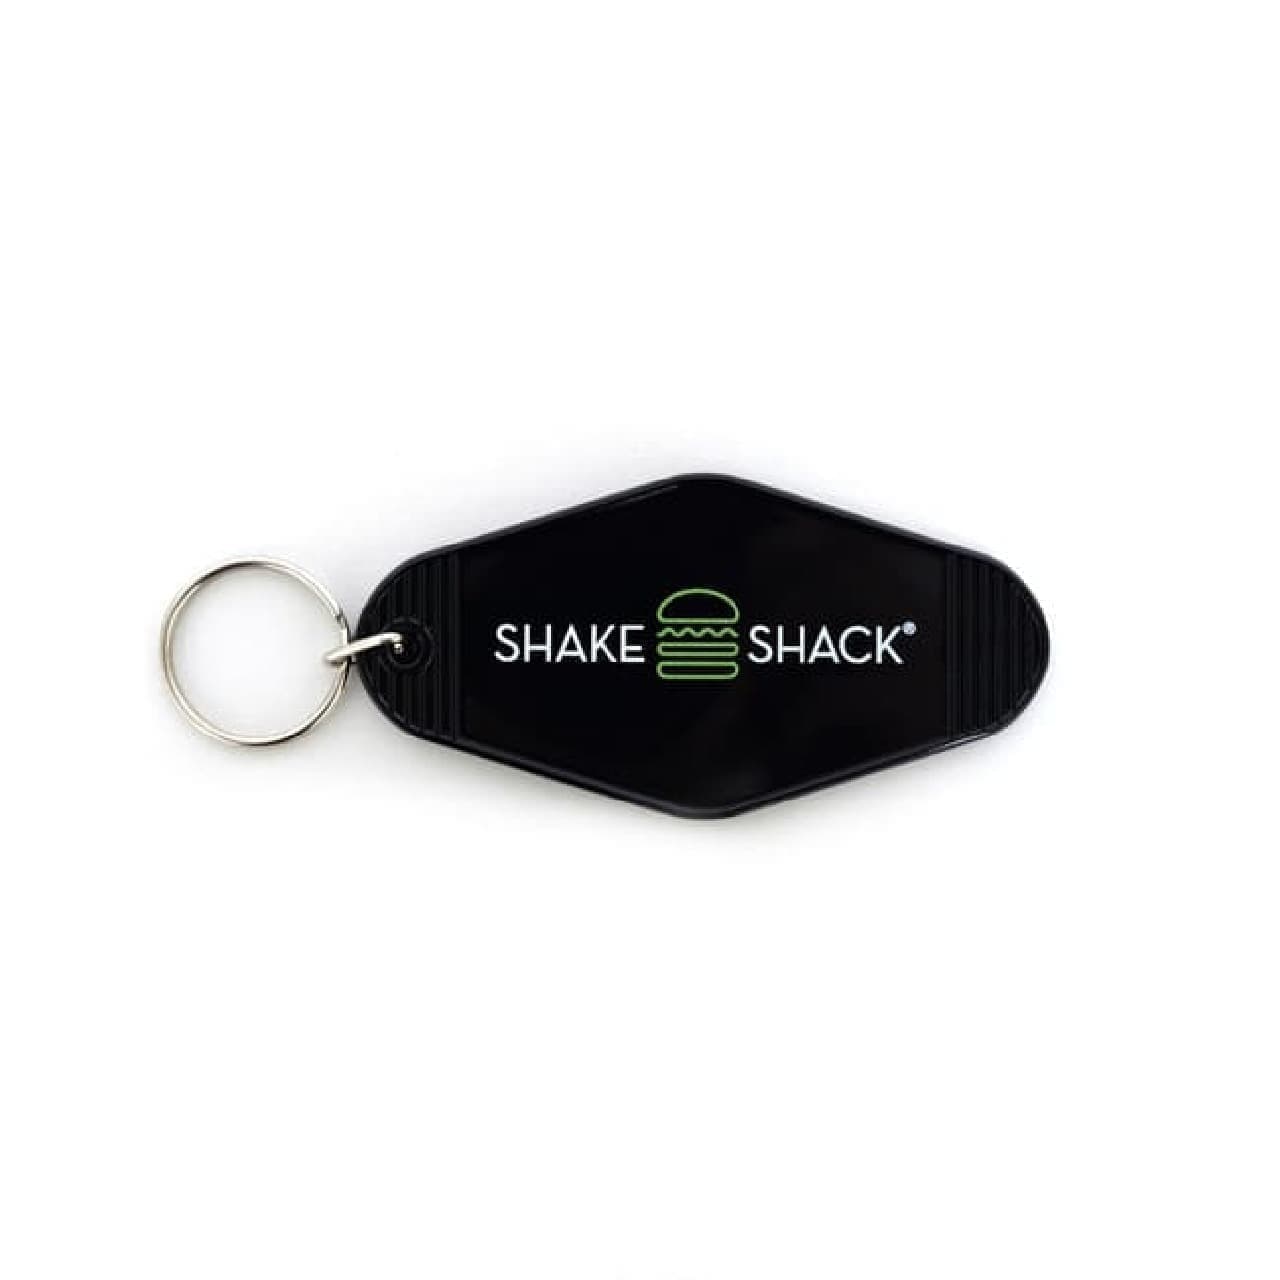 Shake Shack 2022 lucky bag "LUCKY BAG" with food ticket, tote bag, mug, key chain